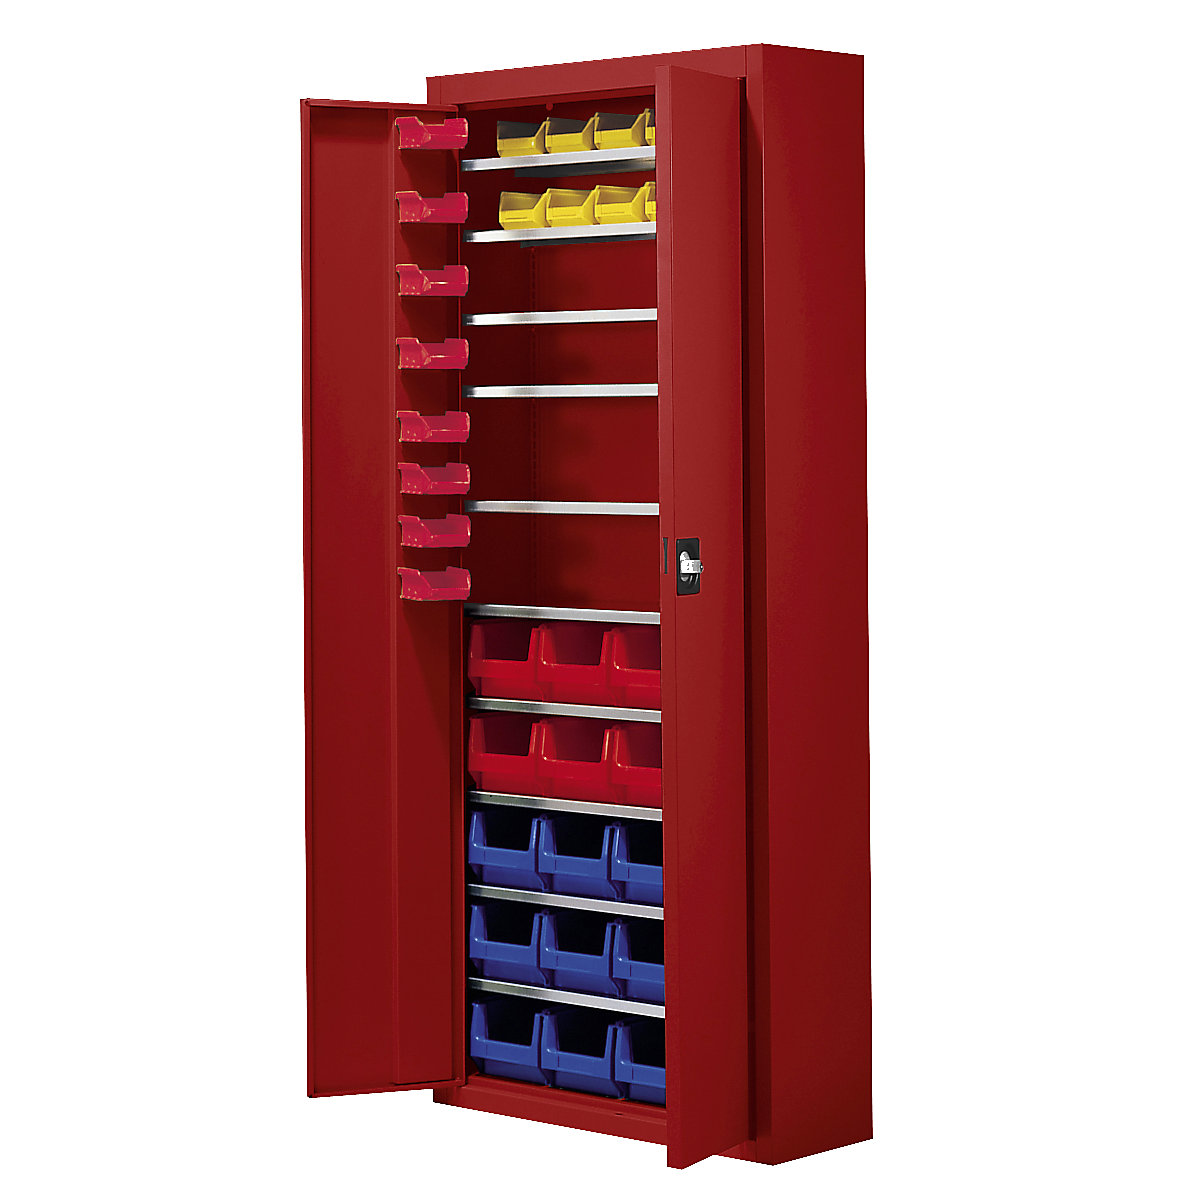 Skladišni ormar s otvorenim skladišnim kutijama – mauser, VxŠxD 1740 x 680 x 280 mm, 48 kutija, u jednoj boji, u vatreno crvenoj boji-1